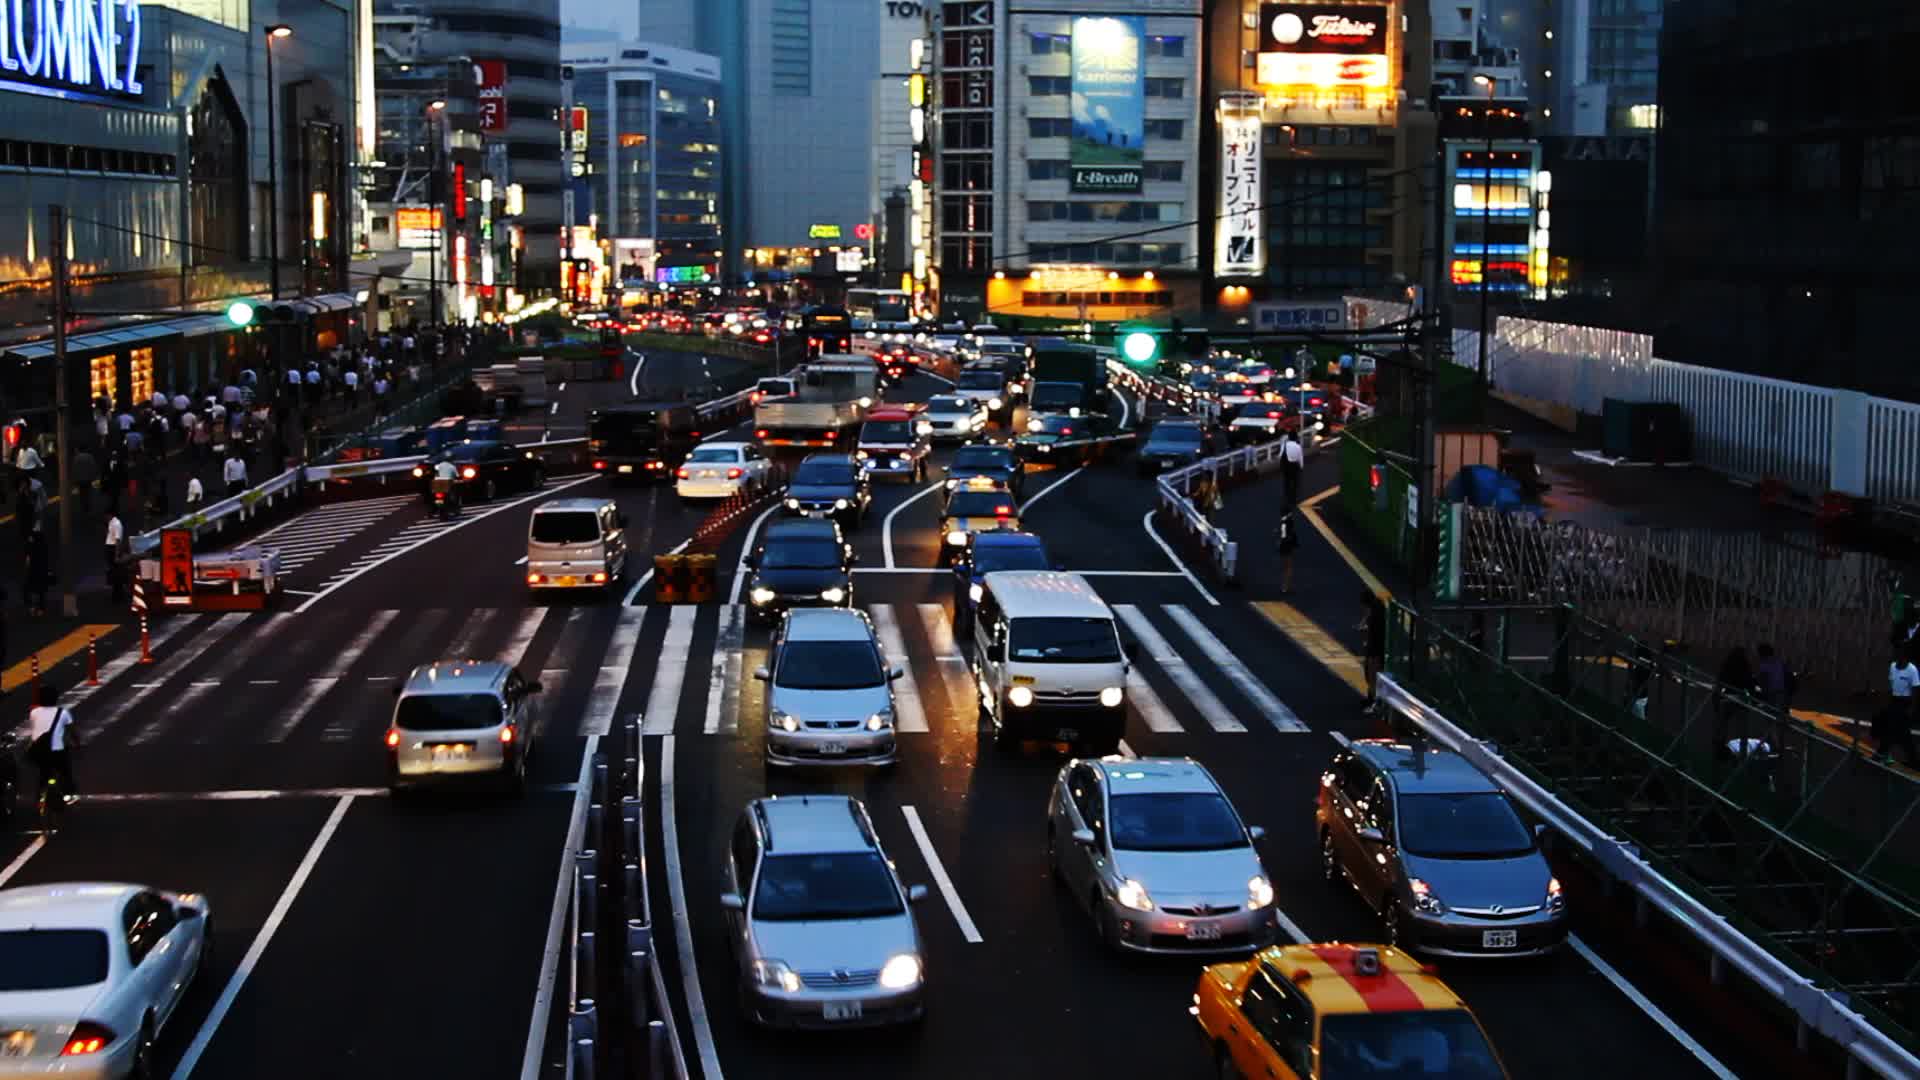 tokyo-night-traffic-jam-footage-012136077_prevstill